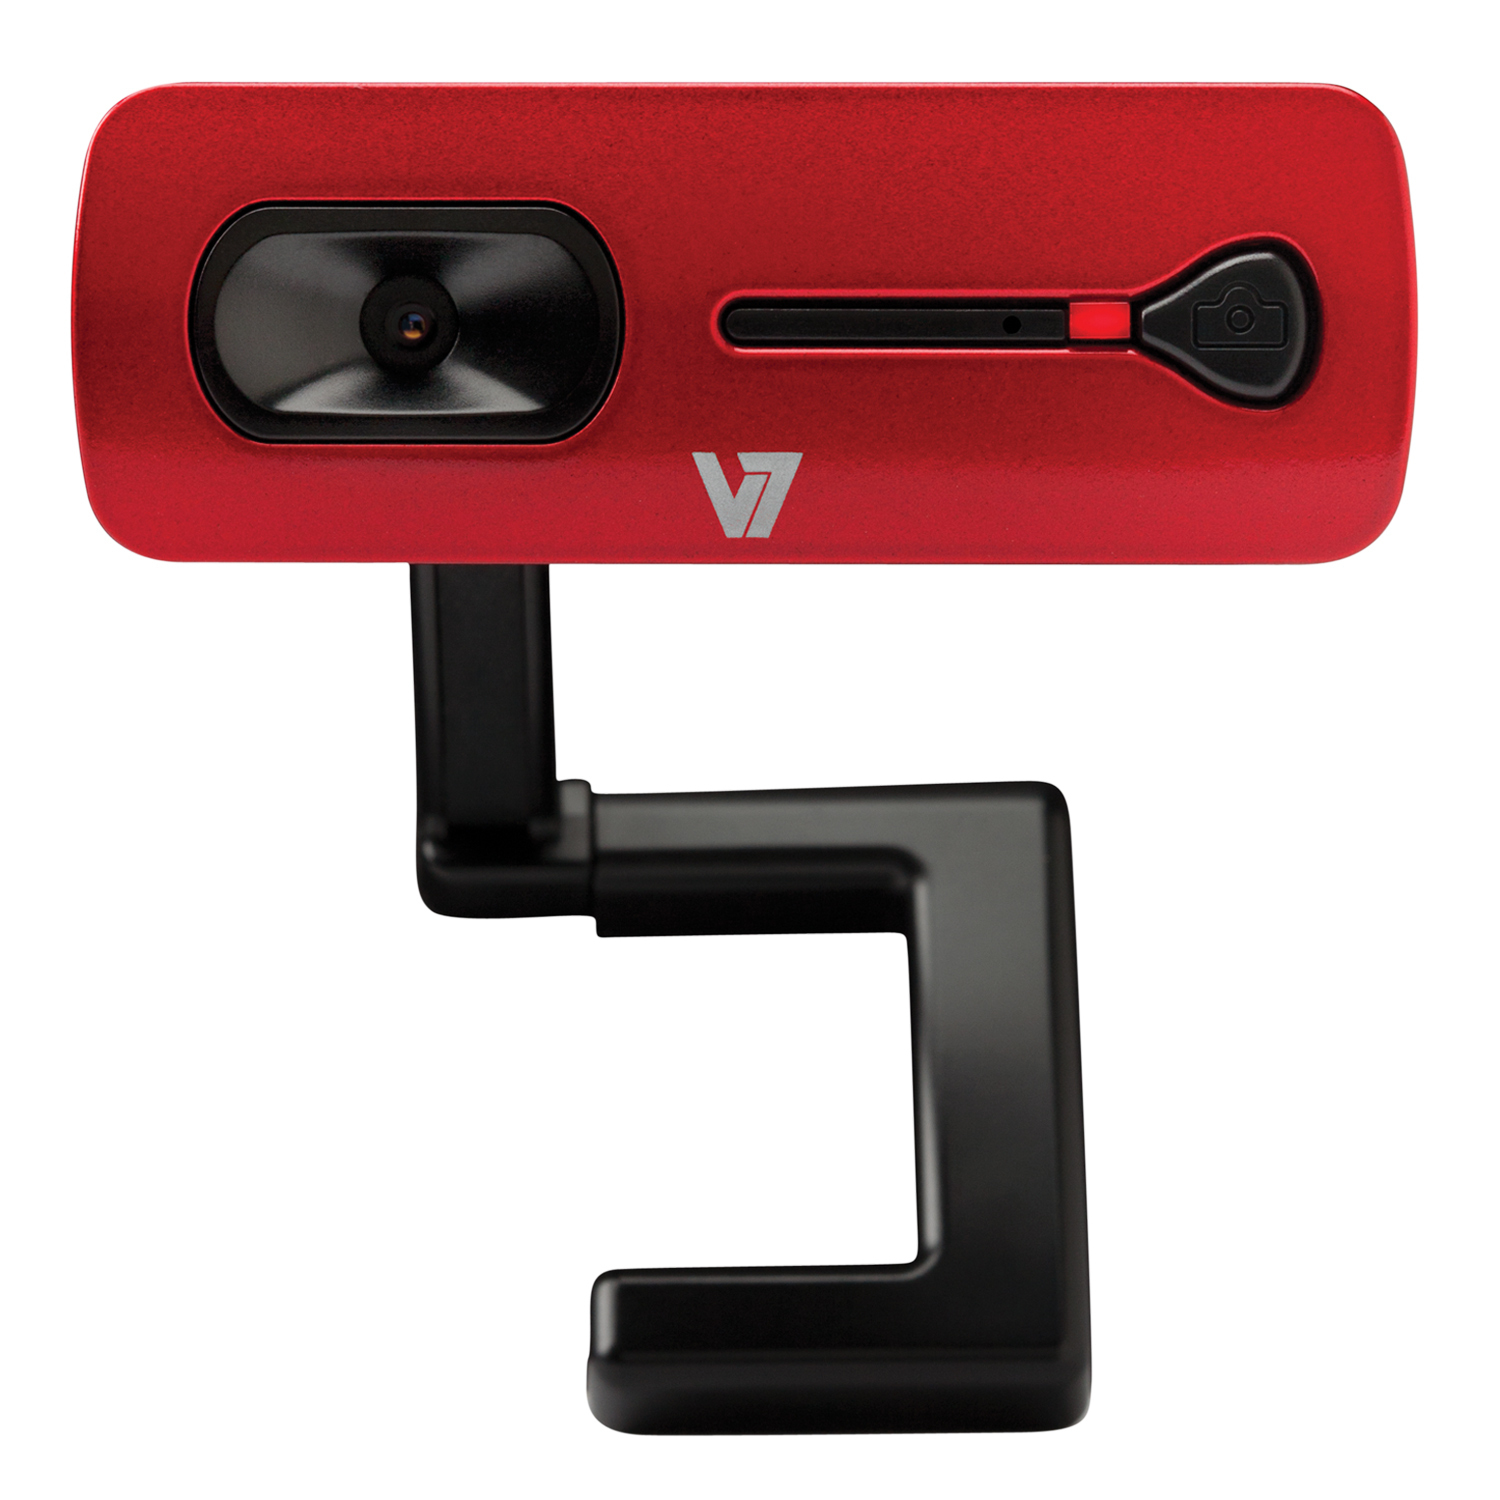 V7 CS2021-1N 2.0 M Effective Pixels USB Elite Webcam 2000